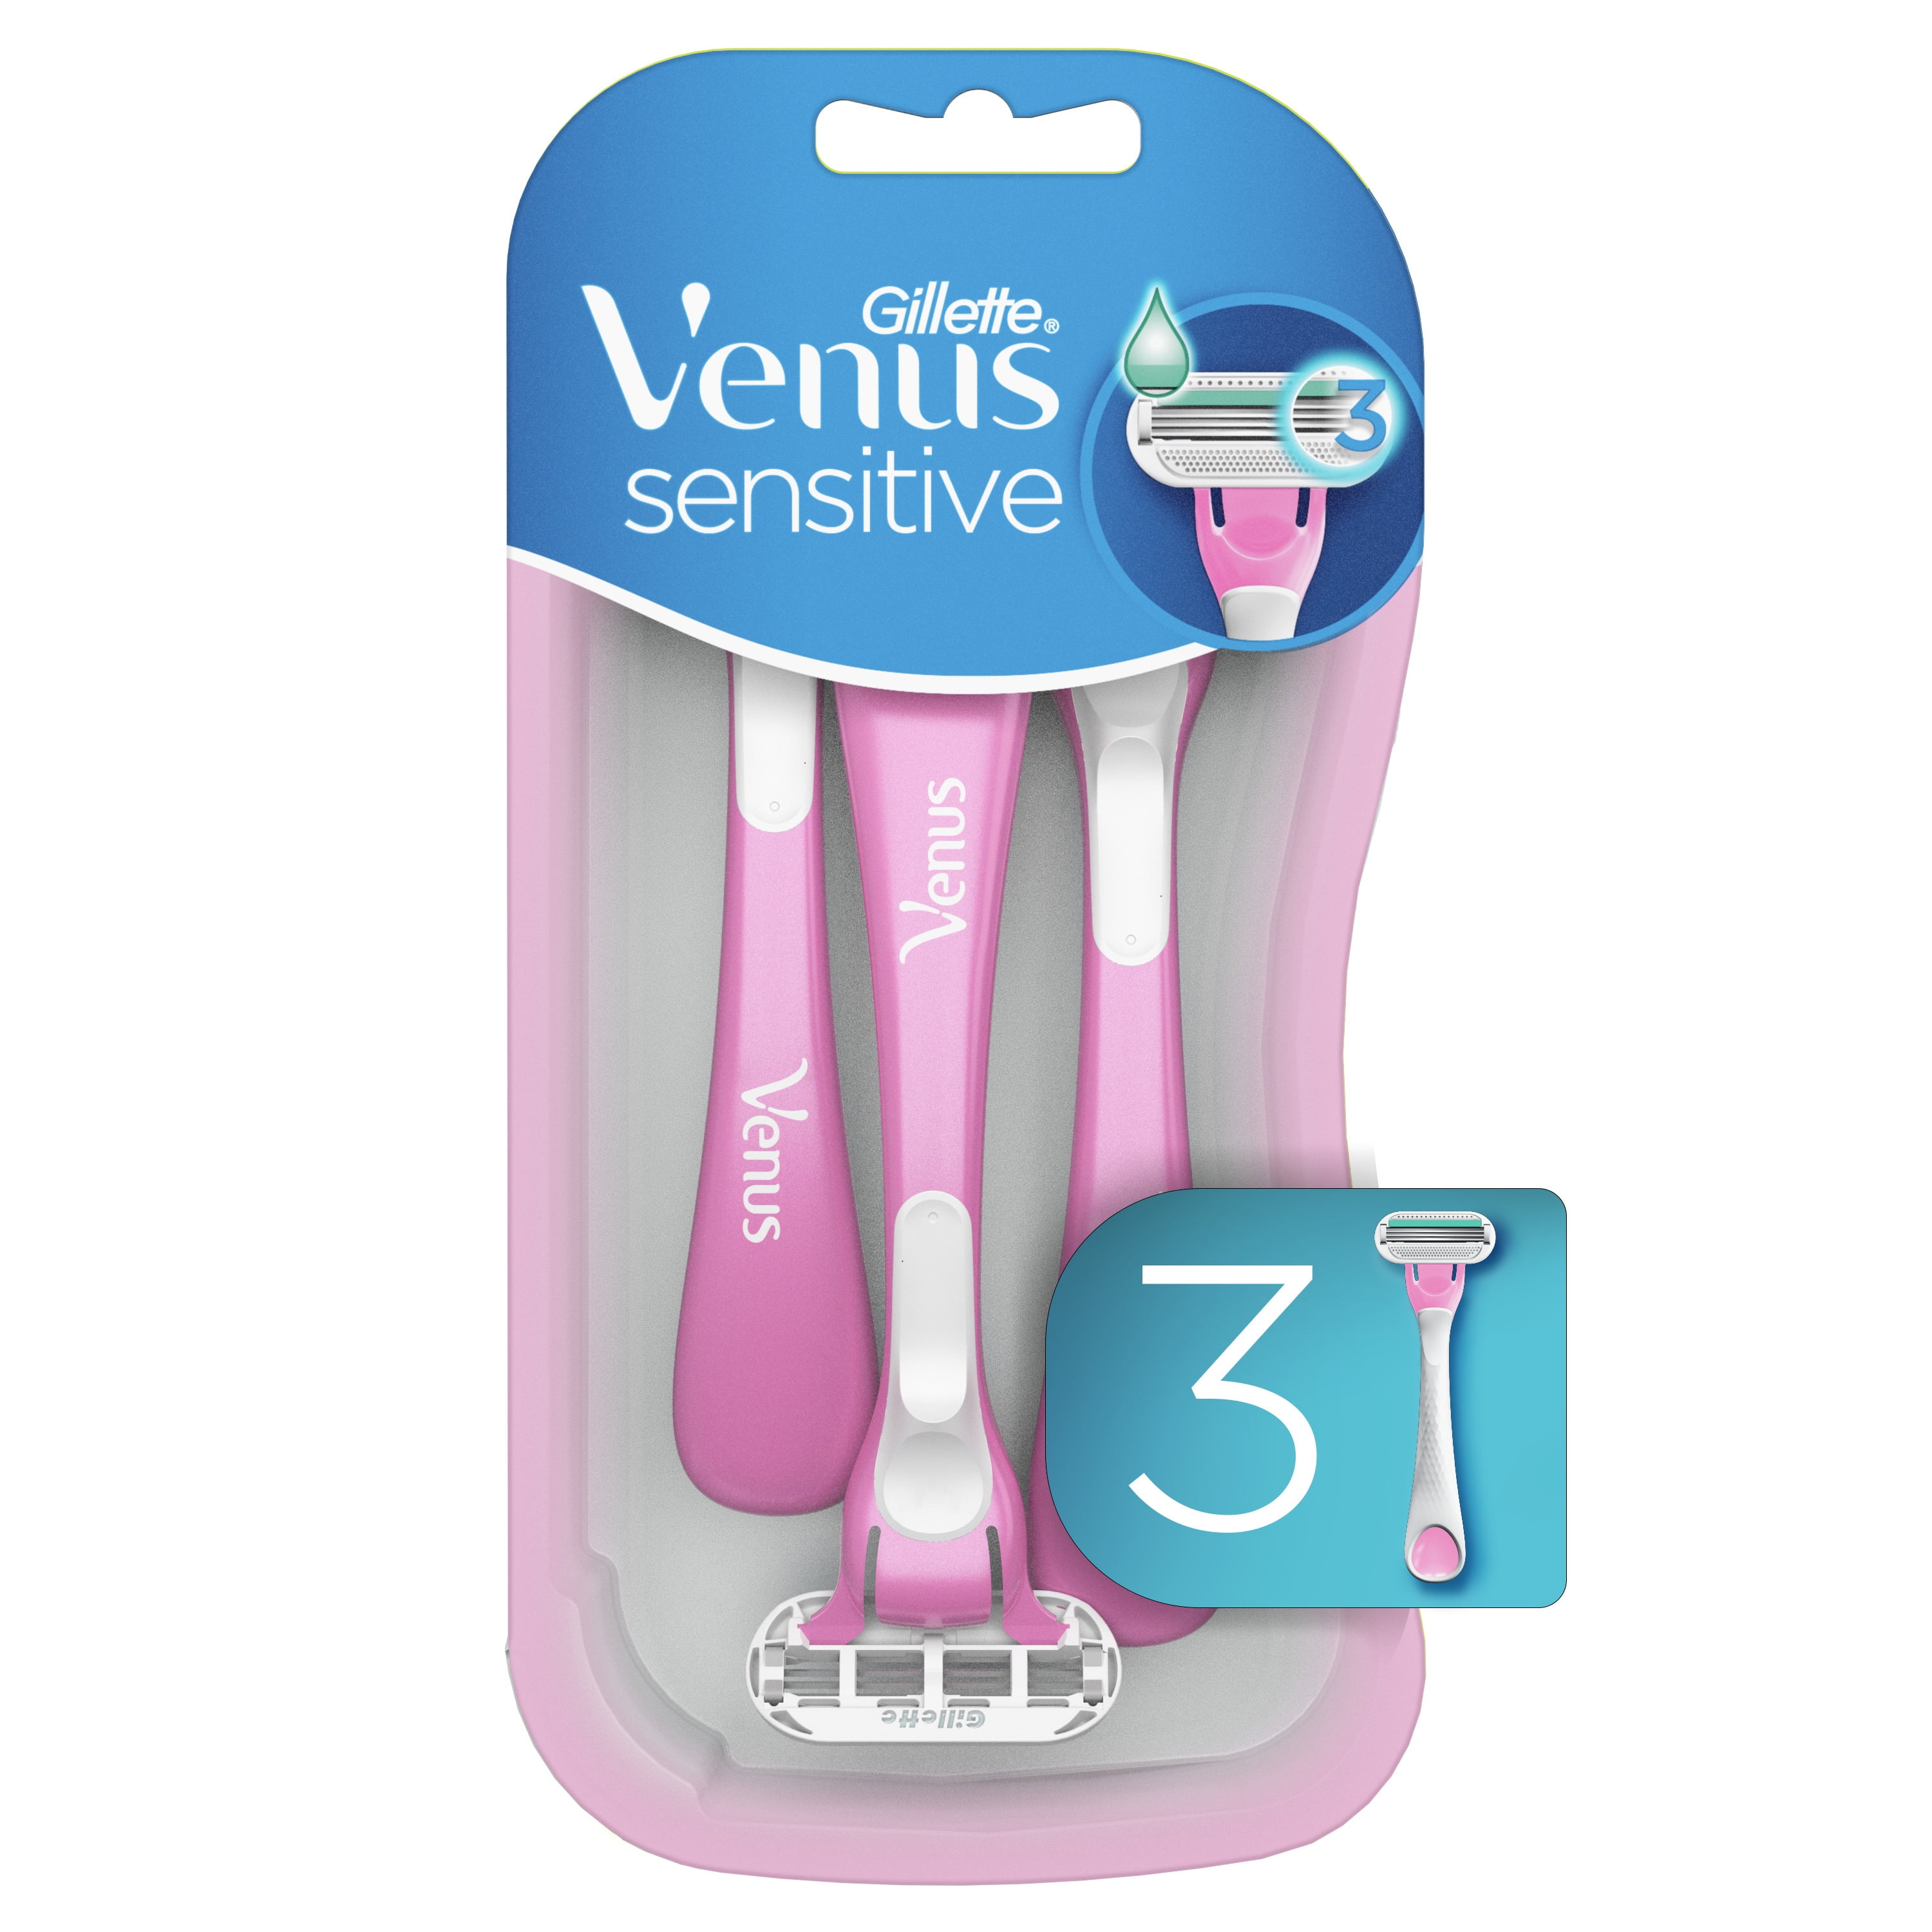 Venus Gillette Sensitive Women's Disposable Razor, 3 Count - Walmart.com